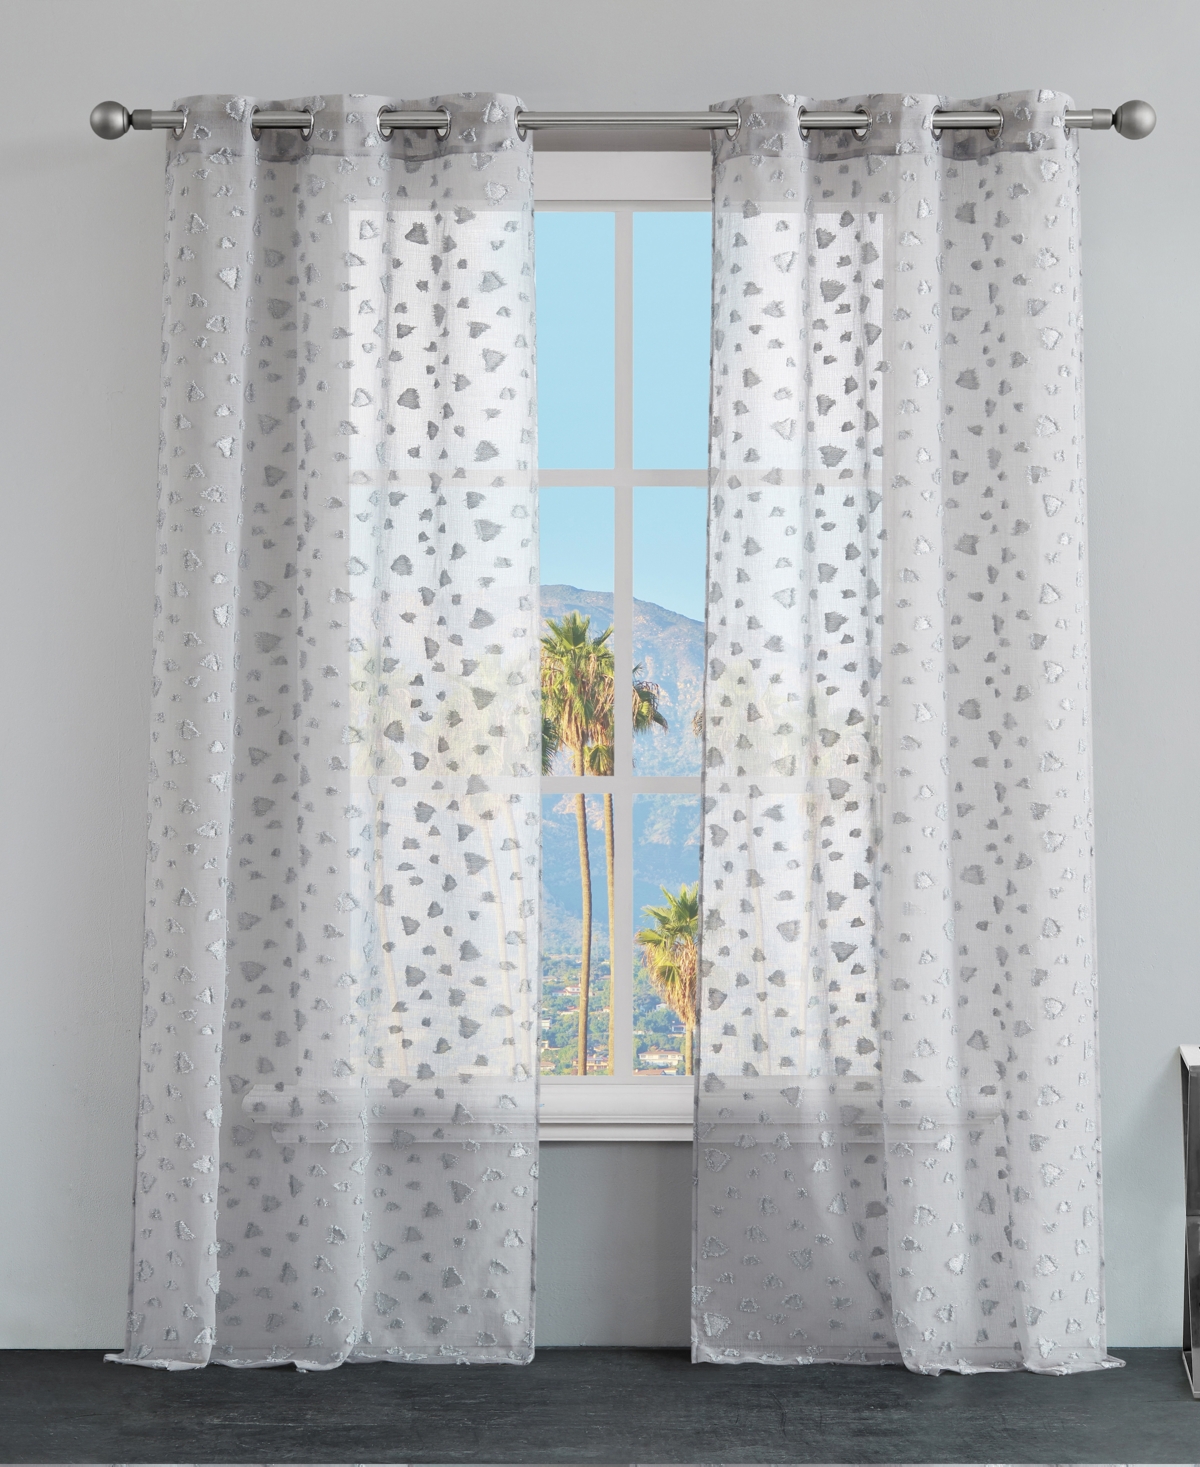 Ethel Leopard Embellished Sheer Grommet Window Curtain Panel Set, 38" x 96" - Black